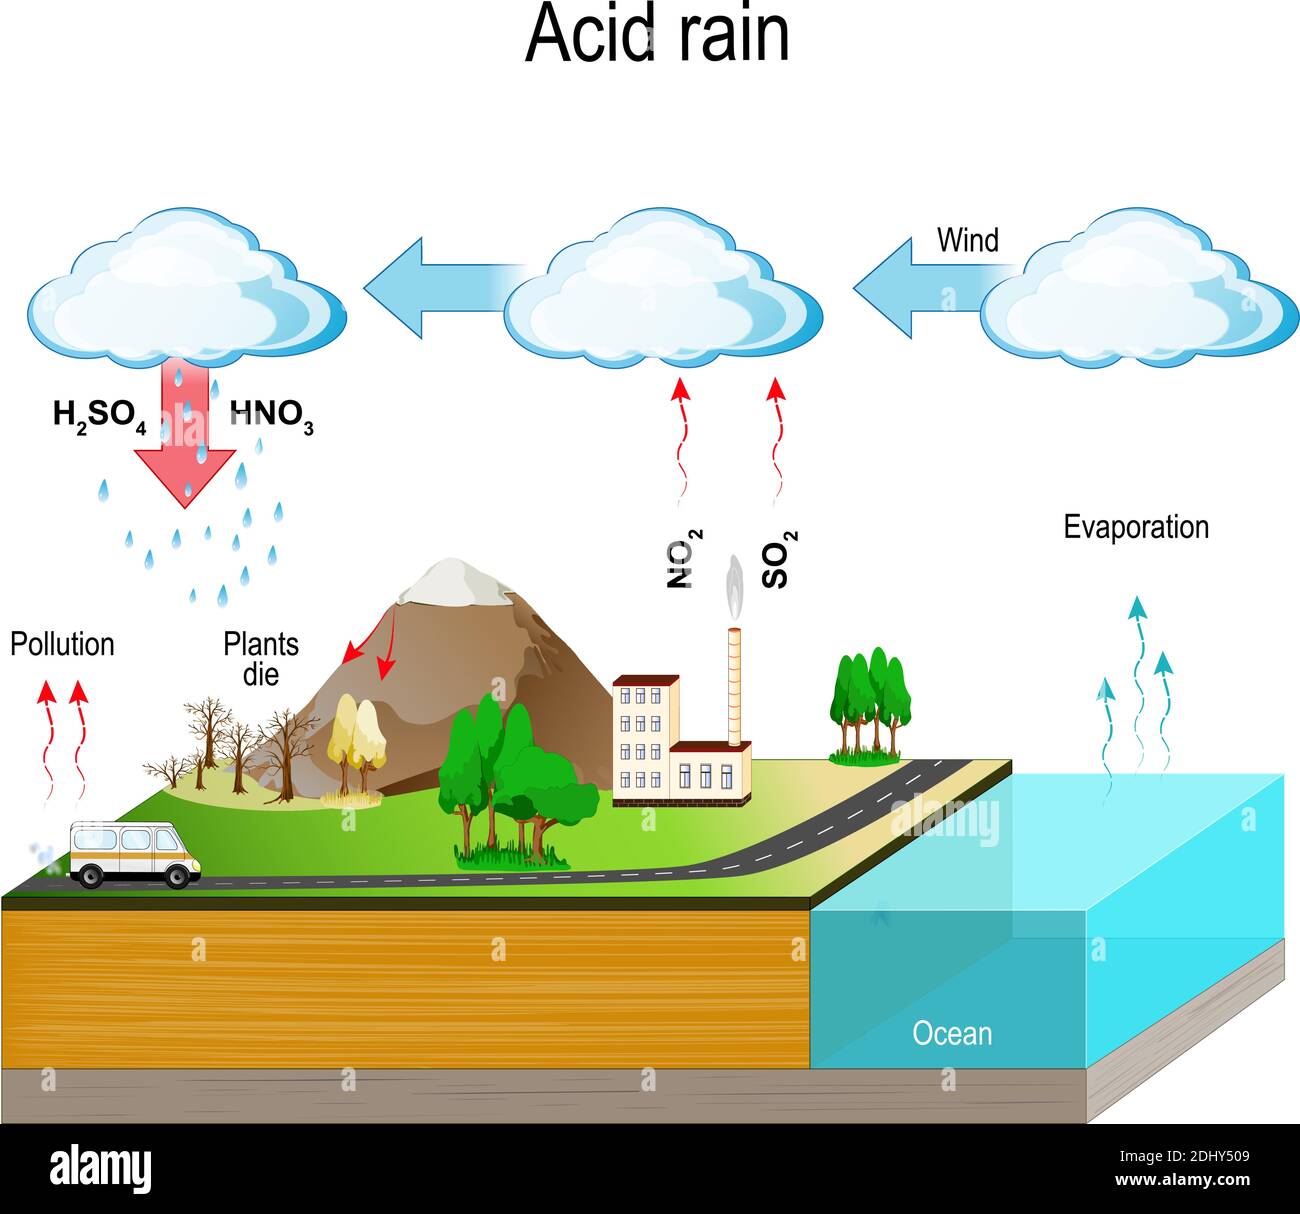 La pioggia acida è causata dalle emissioni di anidride solforosa e di ossido di azoto, che reagiscono con le molecole d'acqua presenti nell'atmosfera per produrre acidi. Illustrazione Vettoriale